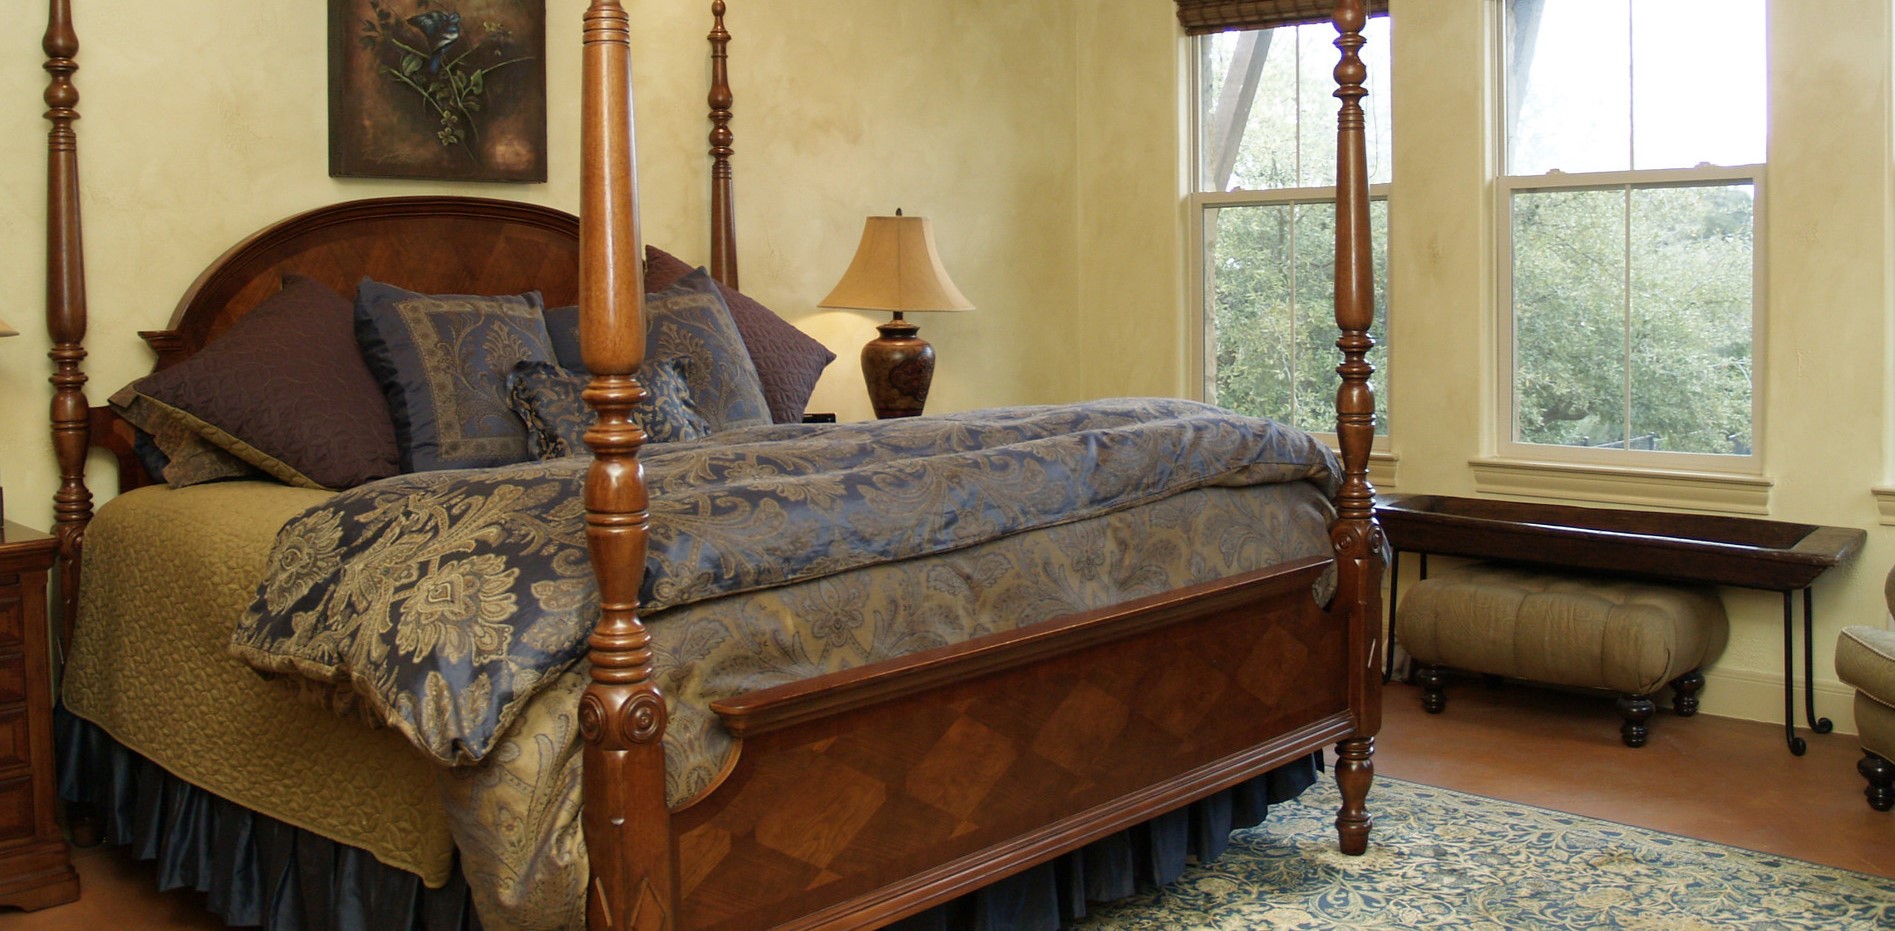 Постельное белье с орнаментом отлично гармонирует с ковром в спальне